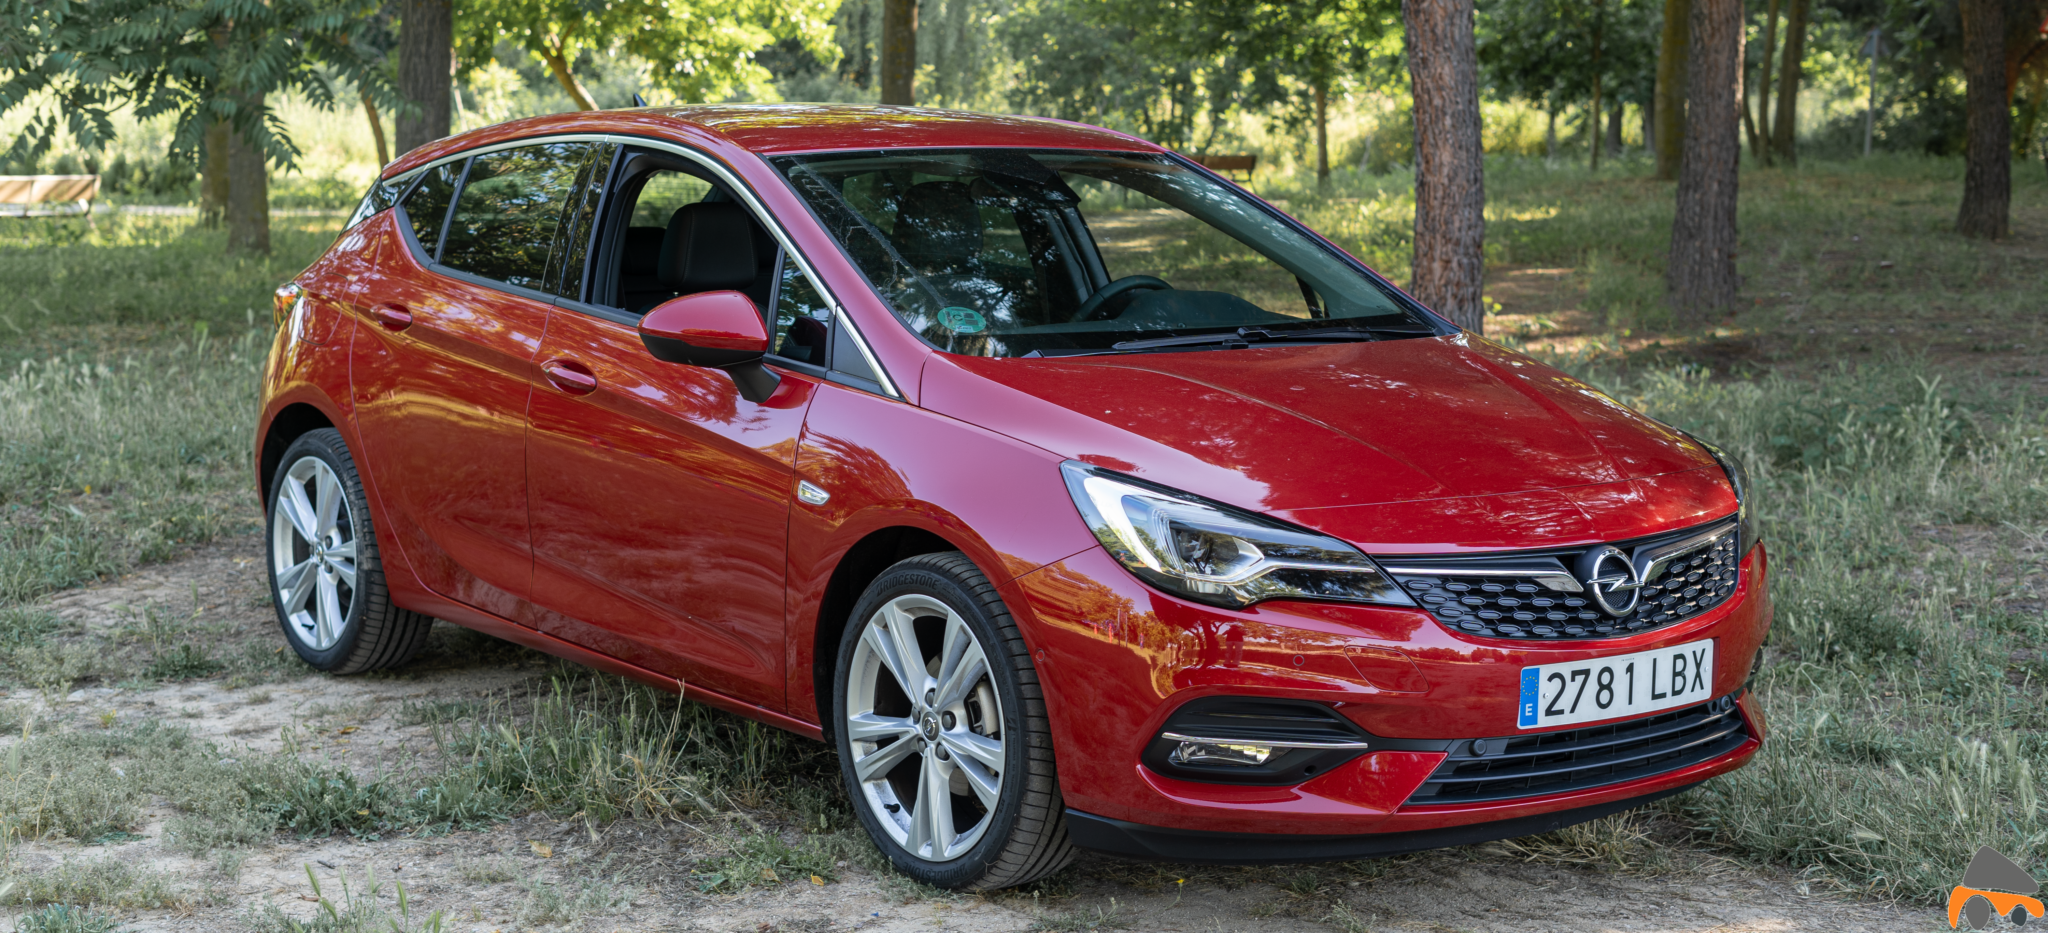 Frontal lateral derecho Opel Astra 2020 145 CV - Opel Astra 2020 1.2 Turbo con 145 CV: Una renovación leve, pero muy necesaria